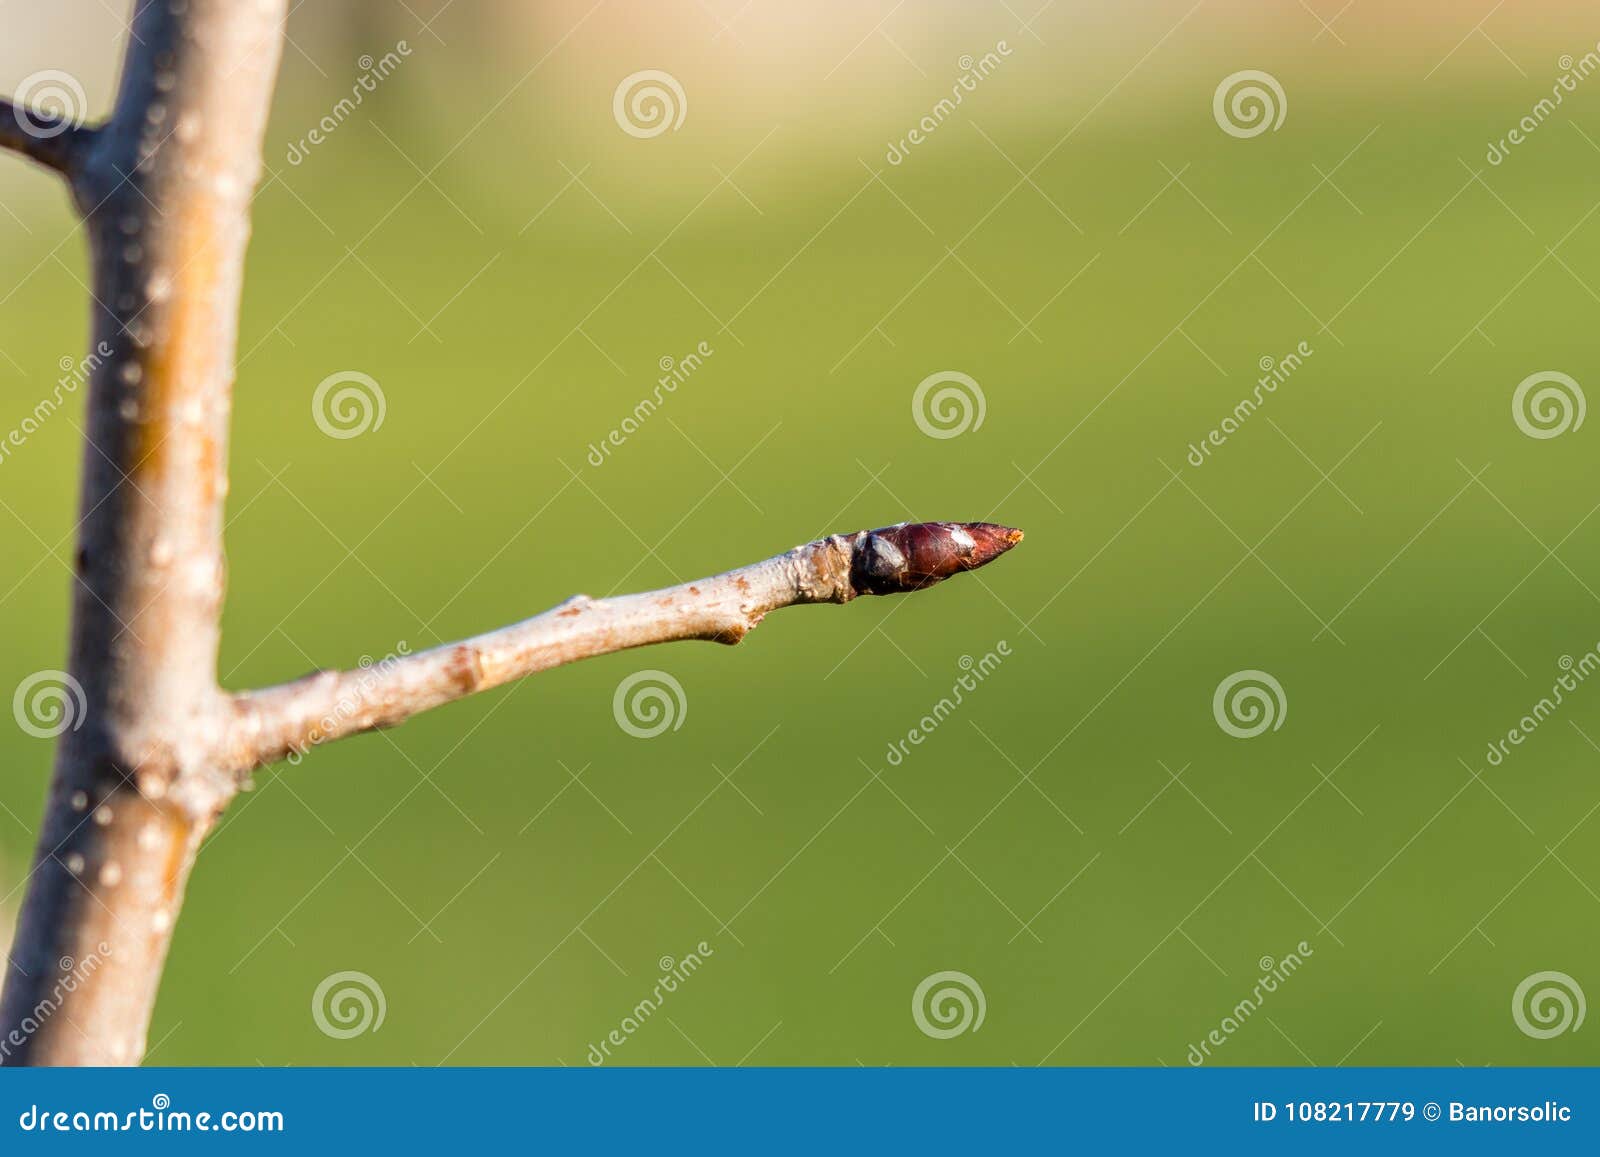 Sleeping Bud on Apple Stem, Closeup Stock Image - Image of apple